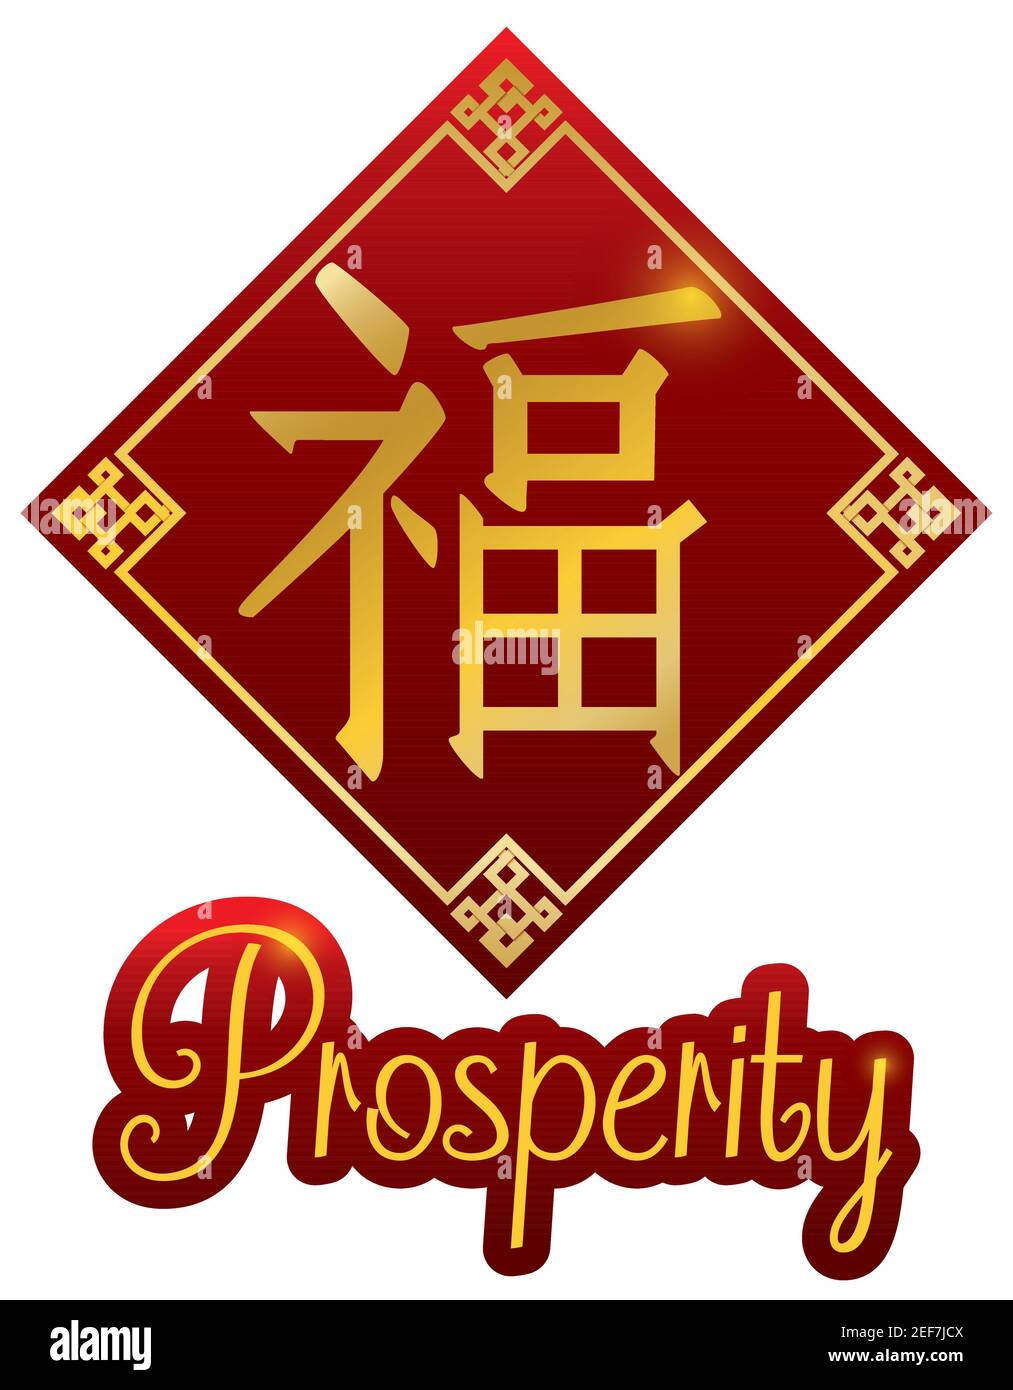 Forma de Rhombus con patrón chino y símbolo de prosperidad (escrito en caligrafía China), aislado sobre fondo blanco. Ilustración del Vector